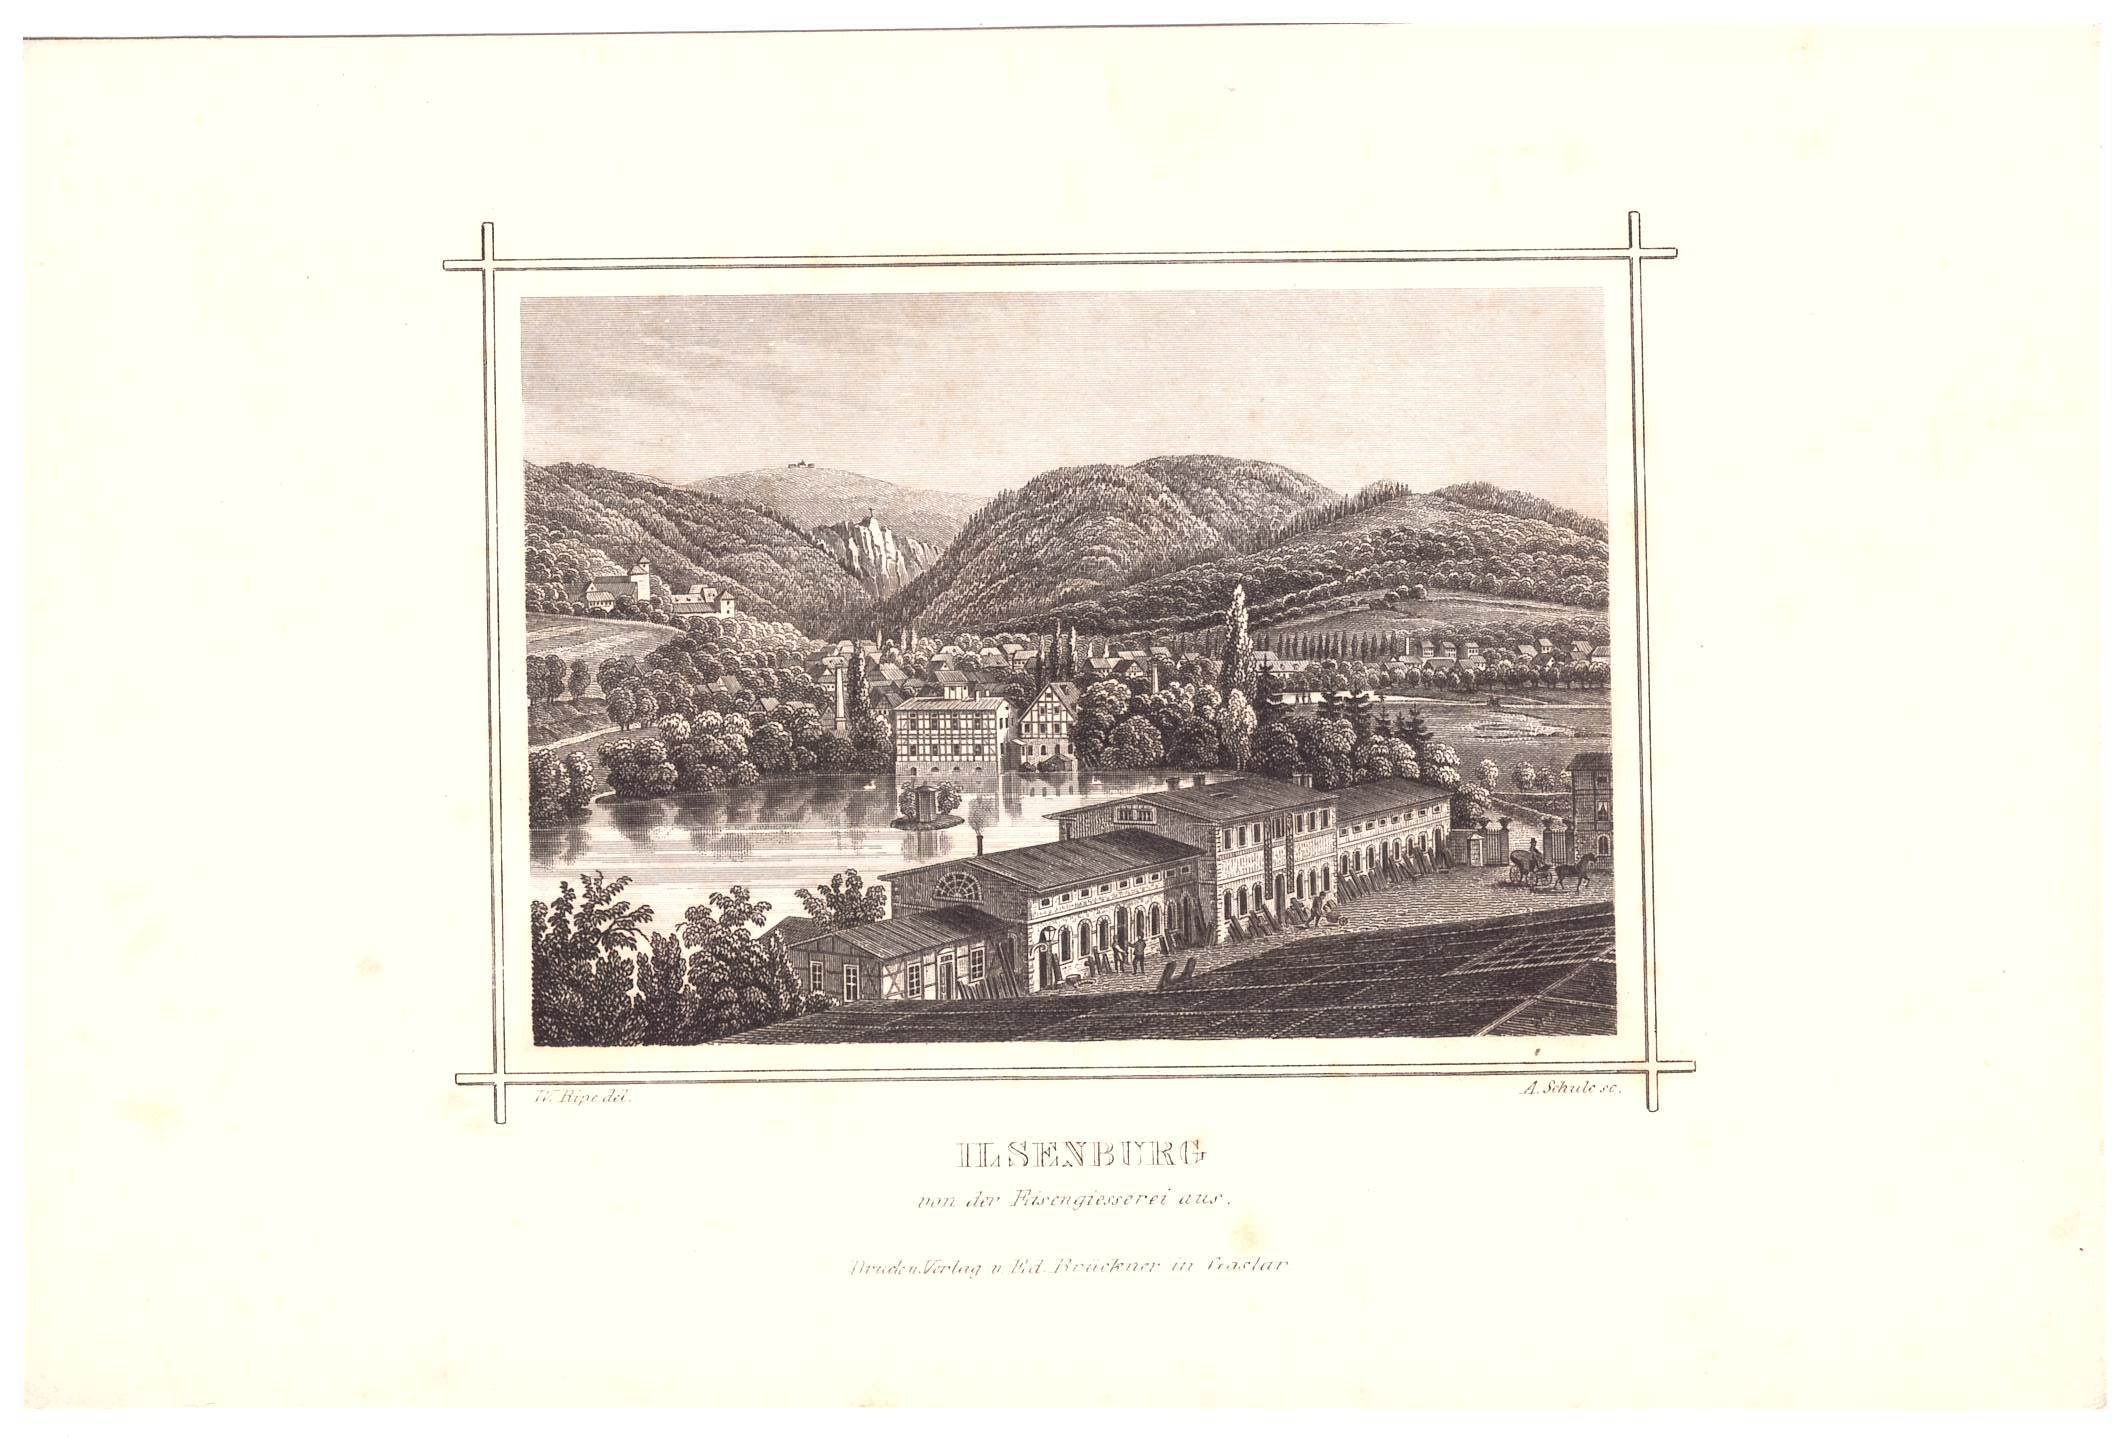 Ilsenburg: Stadt mit Kloster und dem Ilsestein vom Dach des Hüttenwerkes, 1855 (aus: Brückner (Schloß Wernigerode GmbH RR-F)